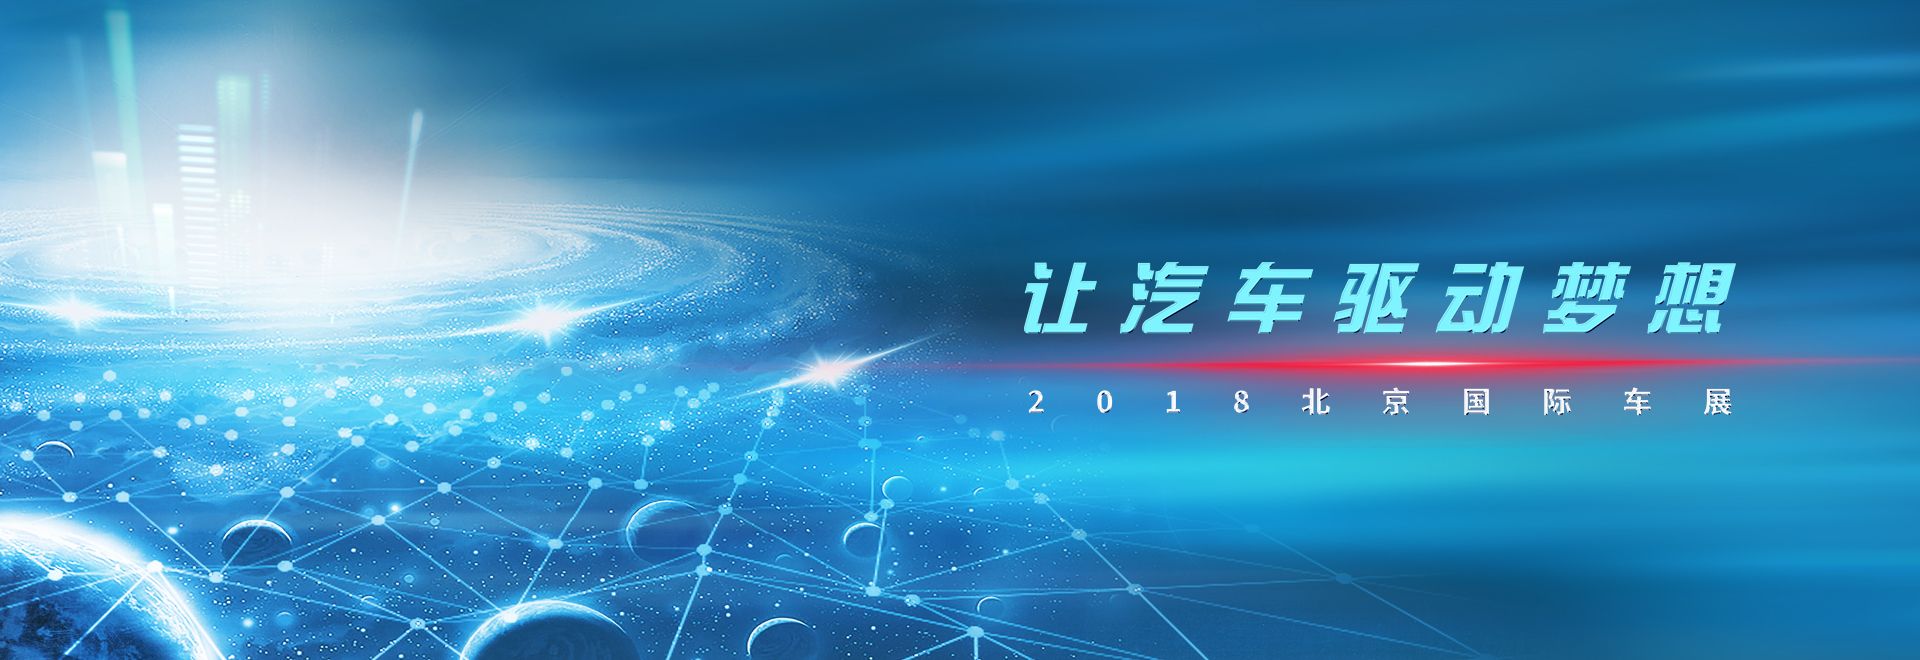 2018北京國際車展